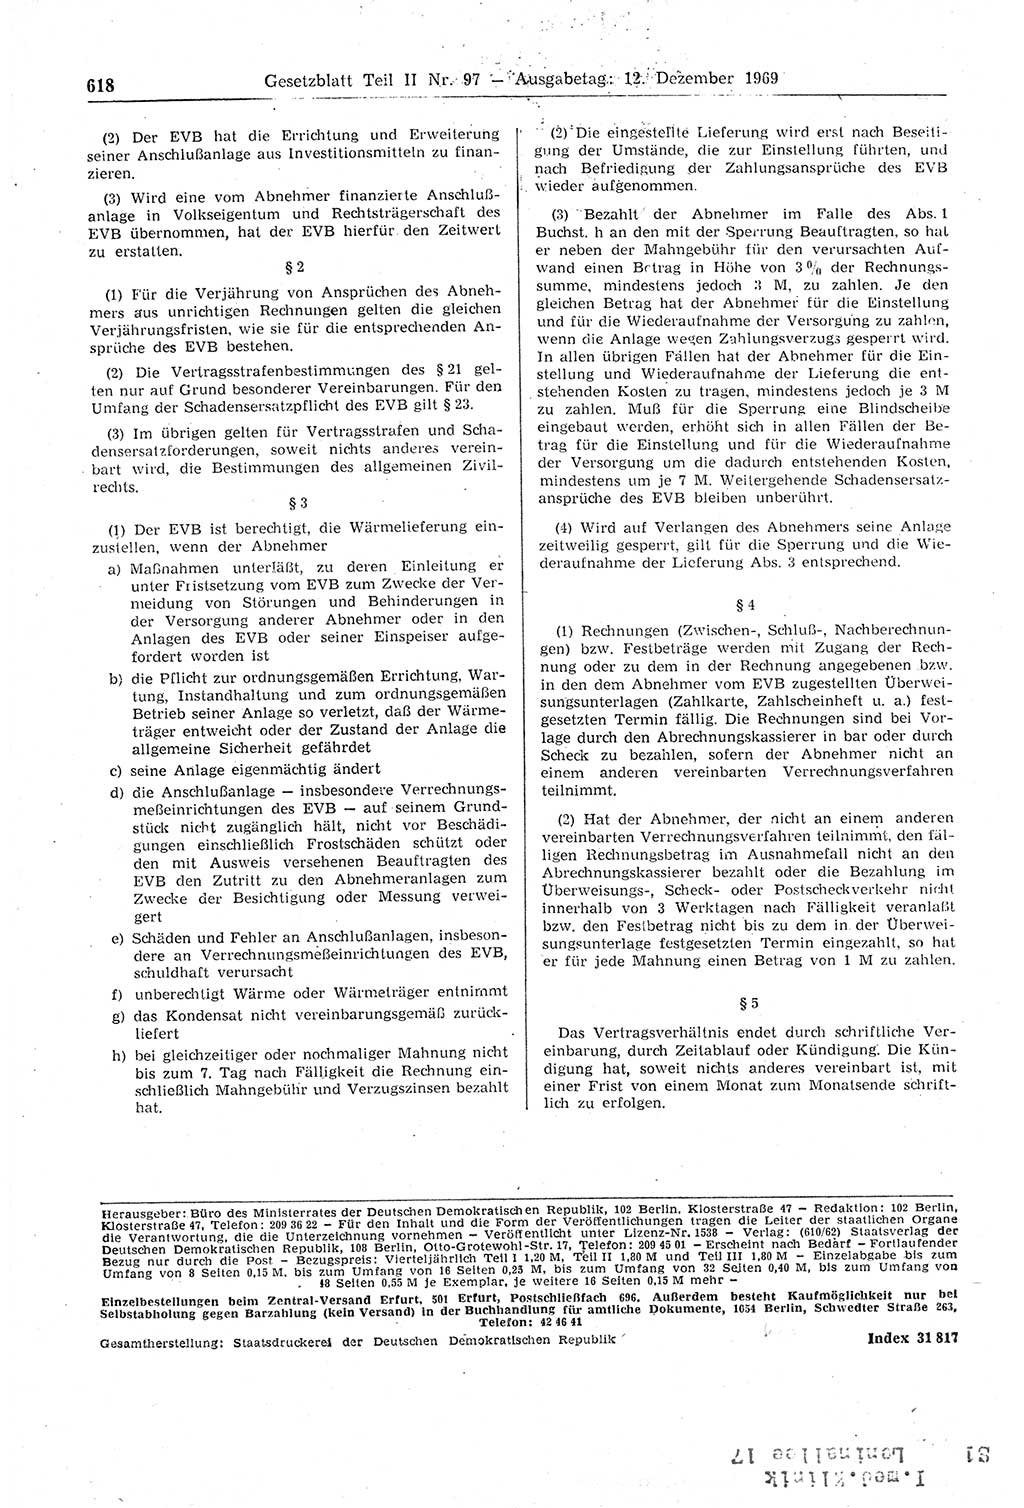 Gesetzblatt (GBl.) der Deutschen Demokratischen Republik (DDR) Teil ⅠⅠ 1969, Seite 618 (GBl. DDR ⅠⅠ 1969, S. 618)